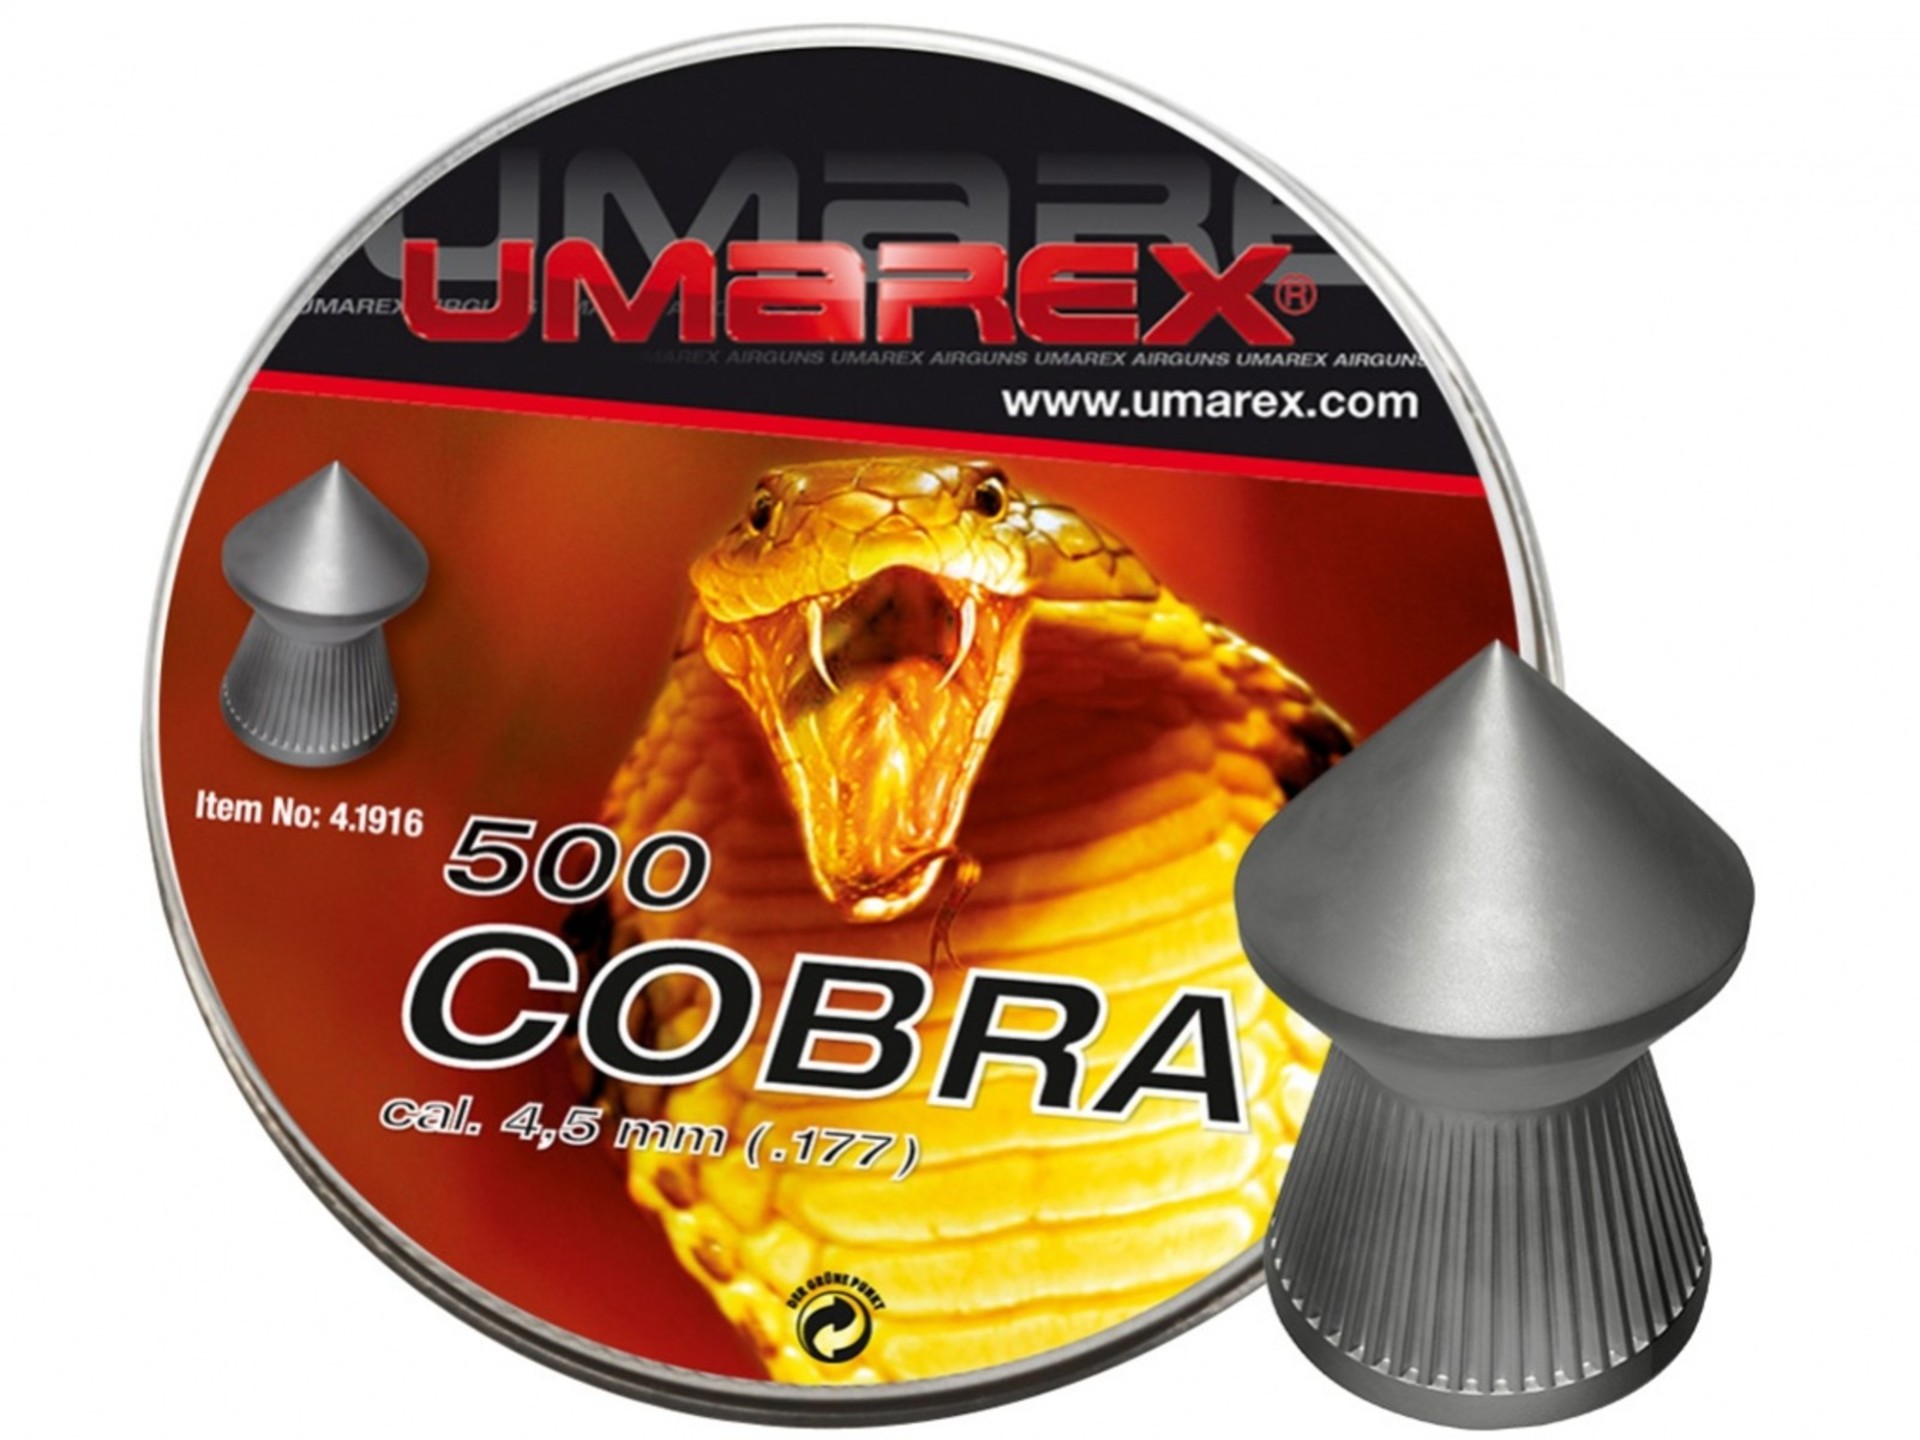 diabolo Cobra Umarex - cal. 4,5